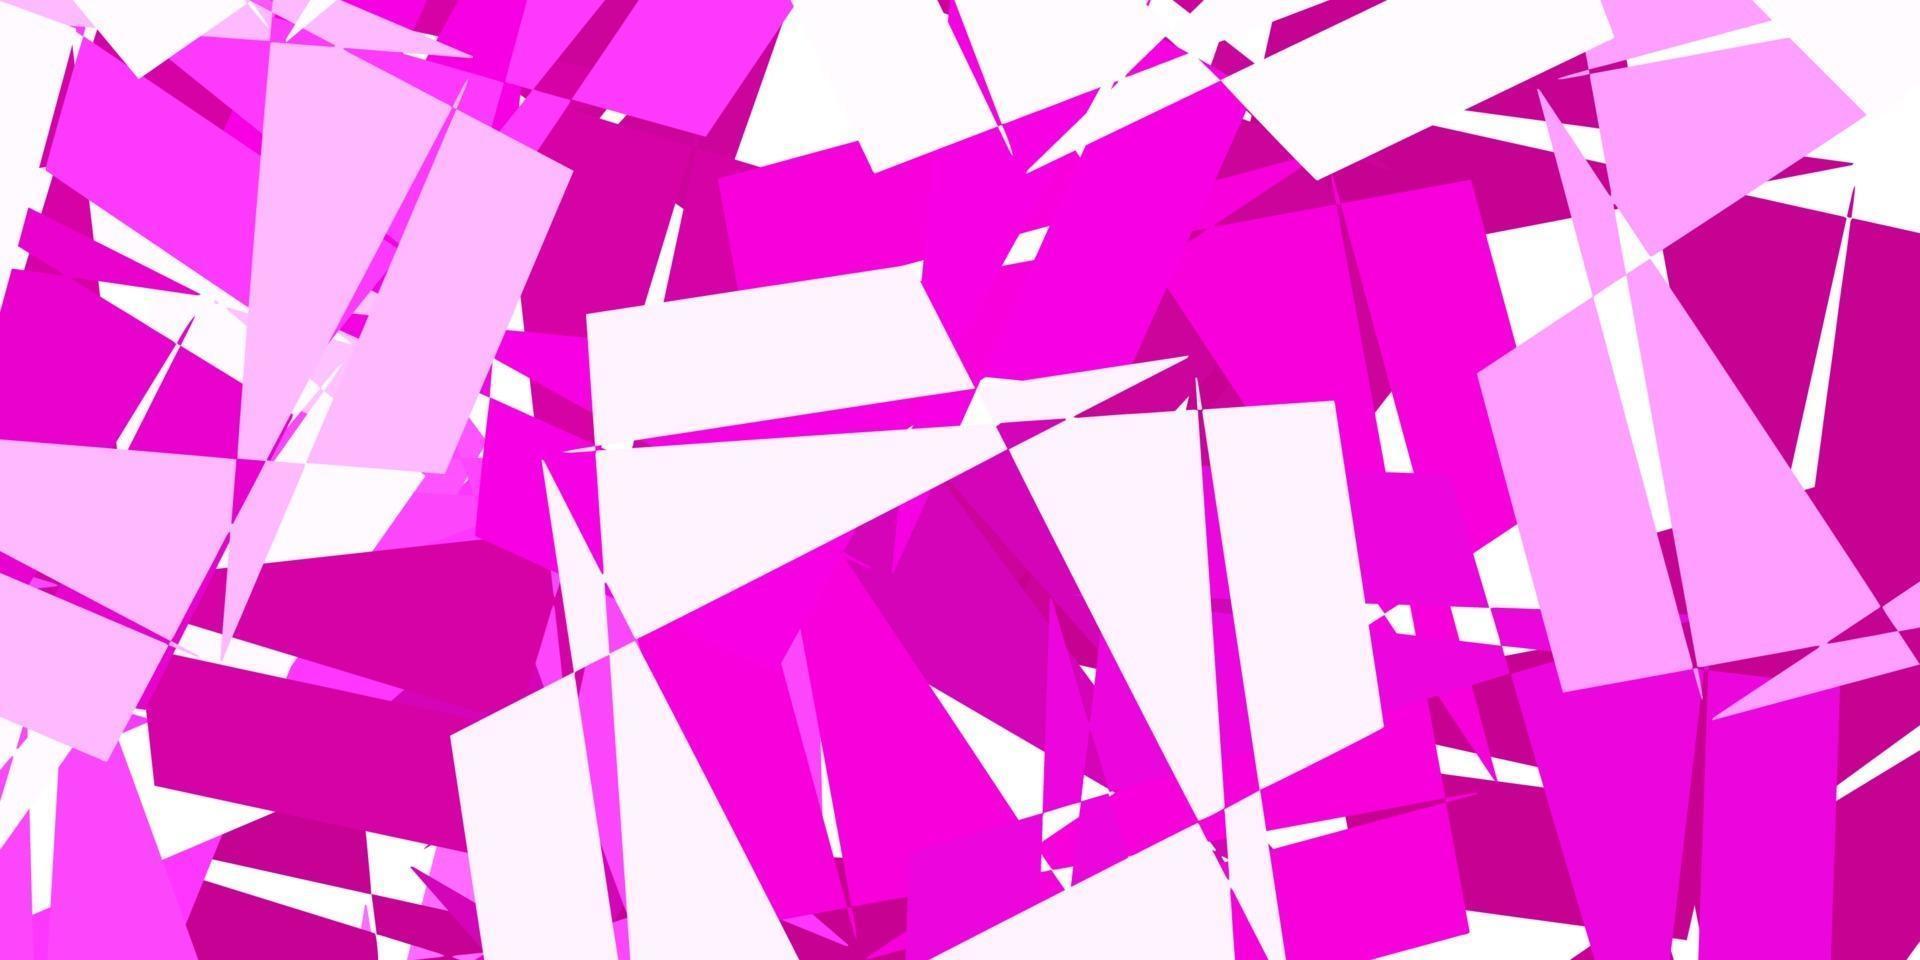 diseño poligonal geométrico vector rosa claro.